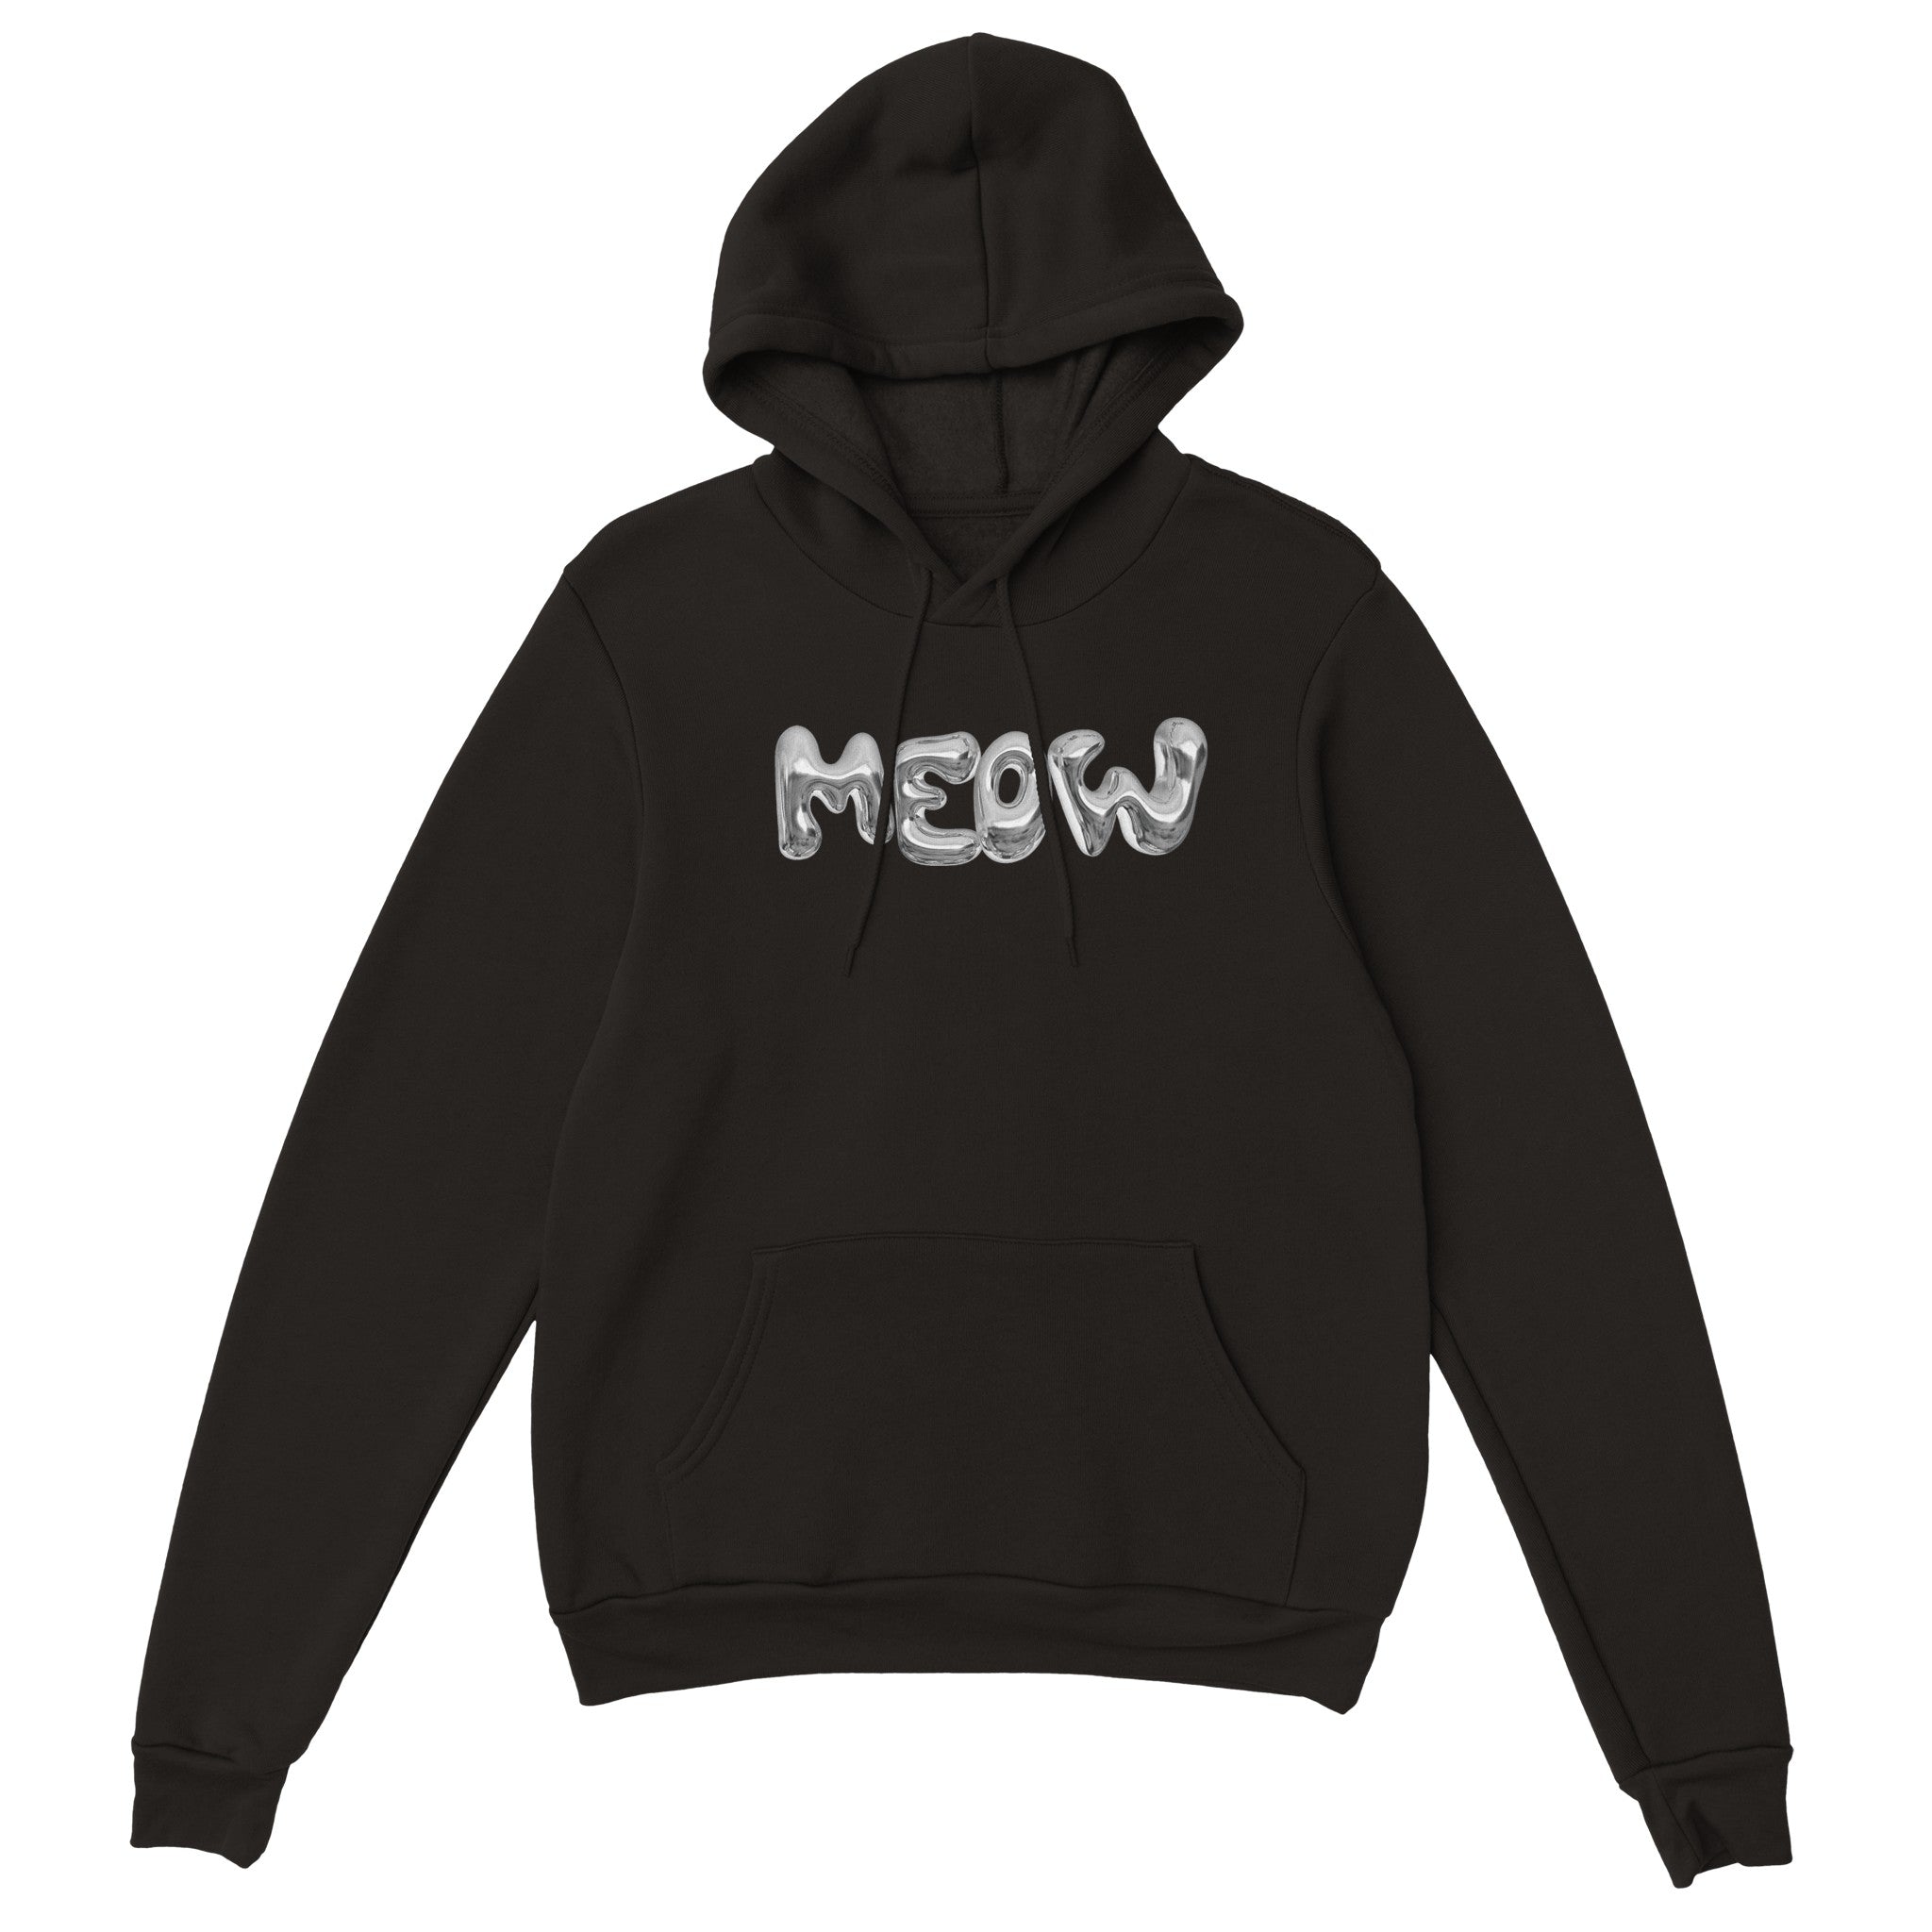 'Meow' hoodie - In Print We Trust